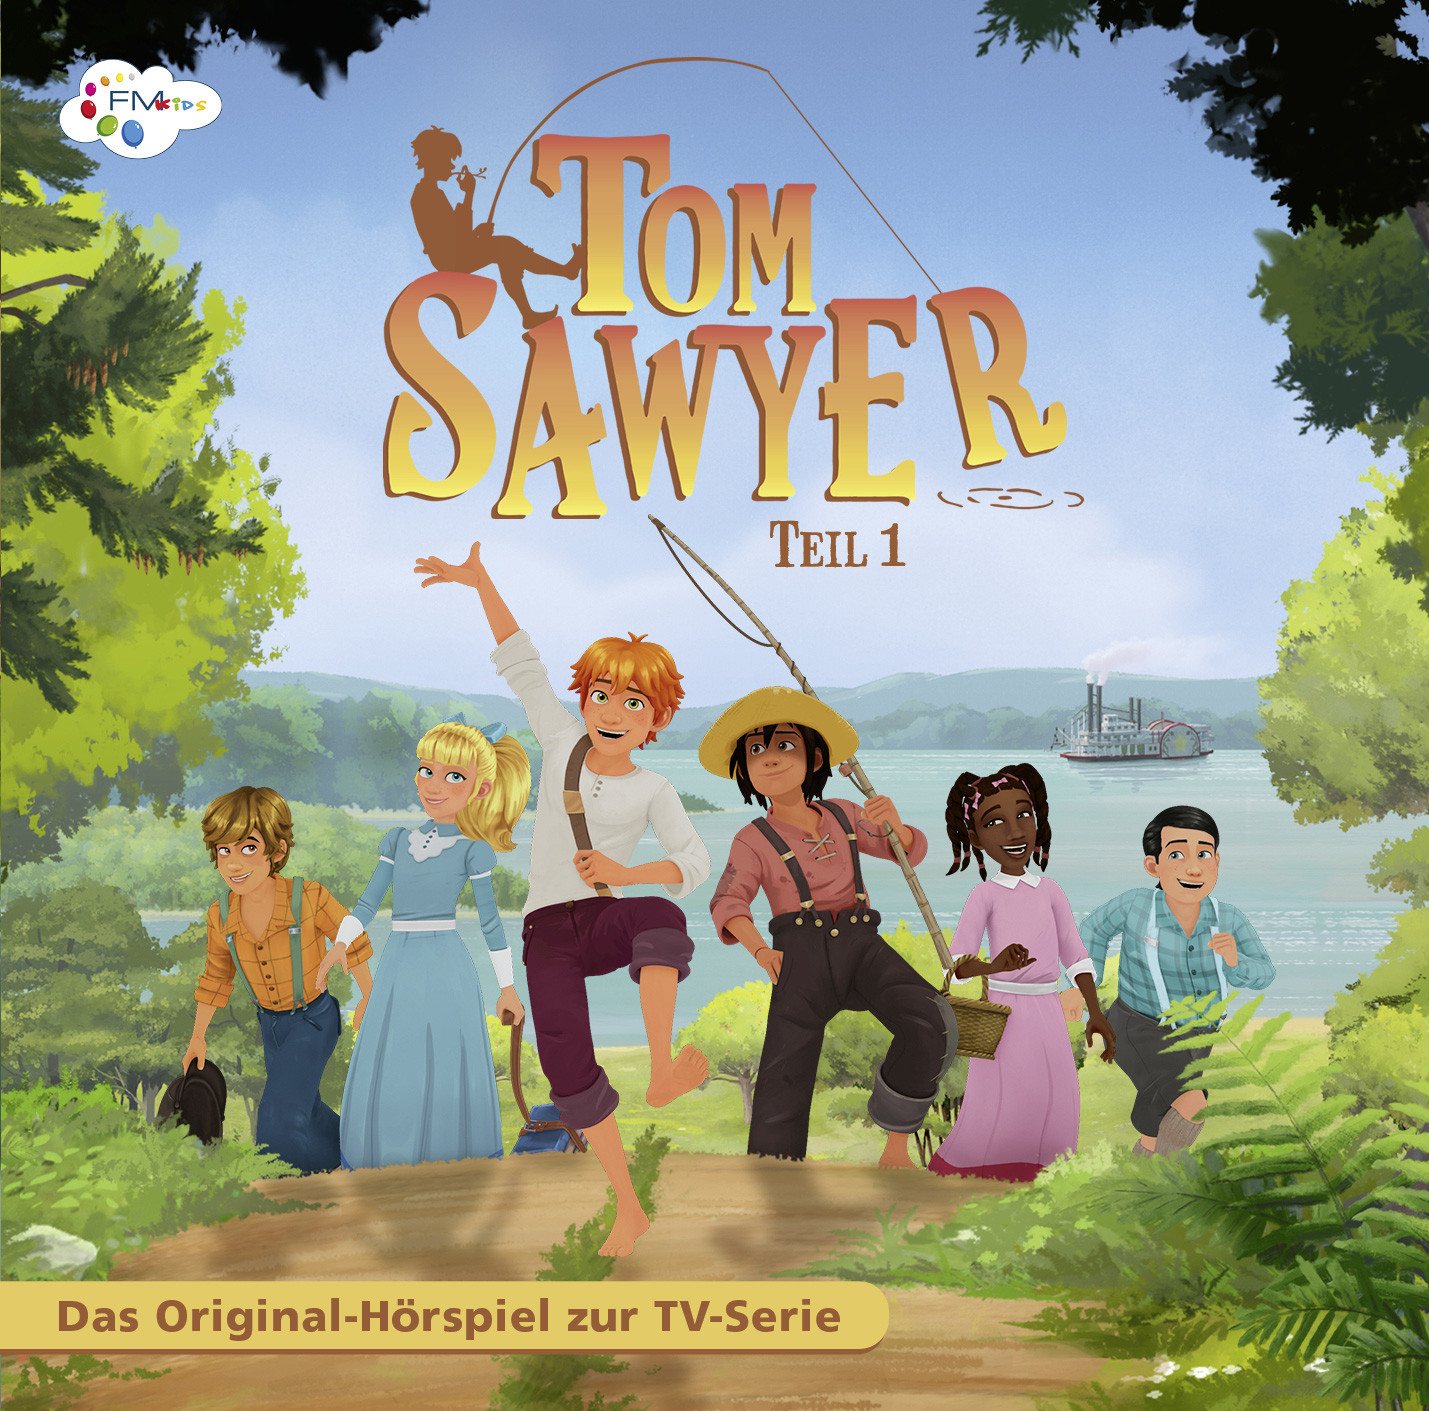 Tom Sawyer - Teil 1 (Hörspiel zur TV-Serie)